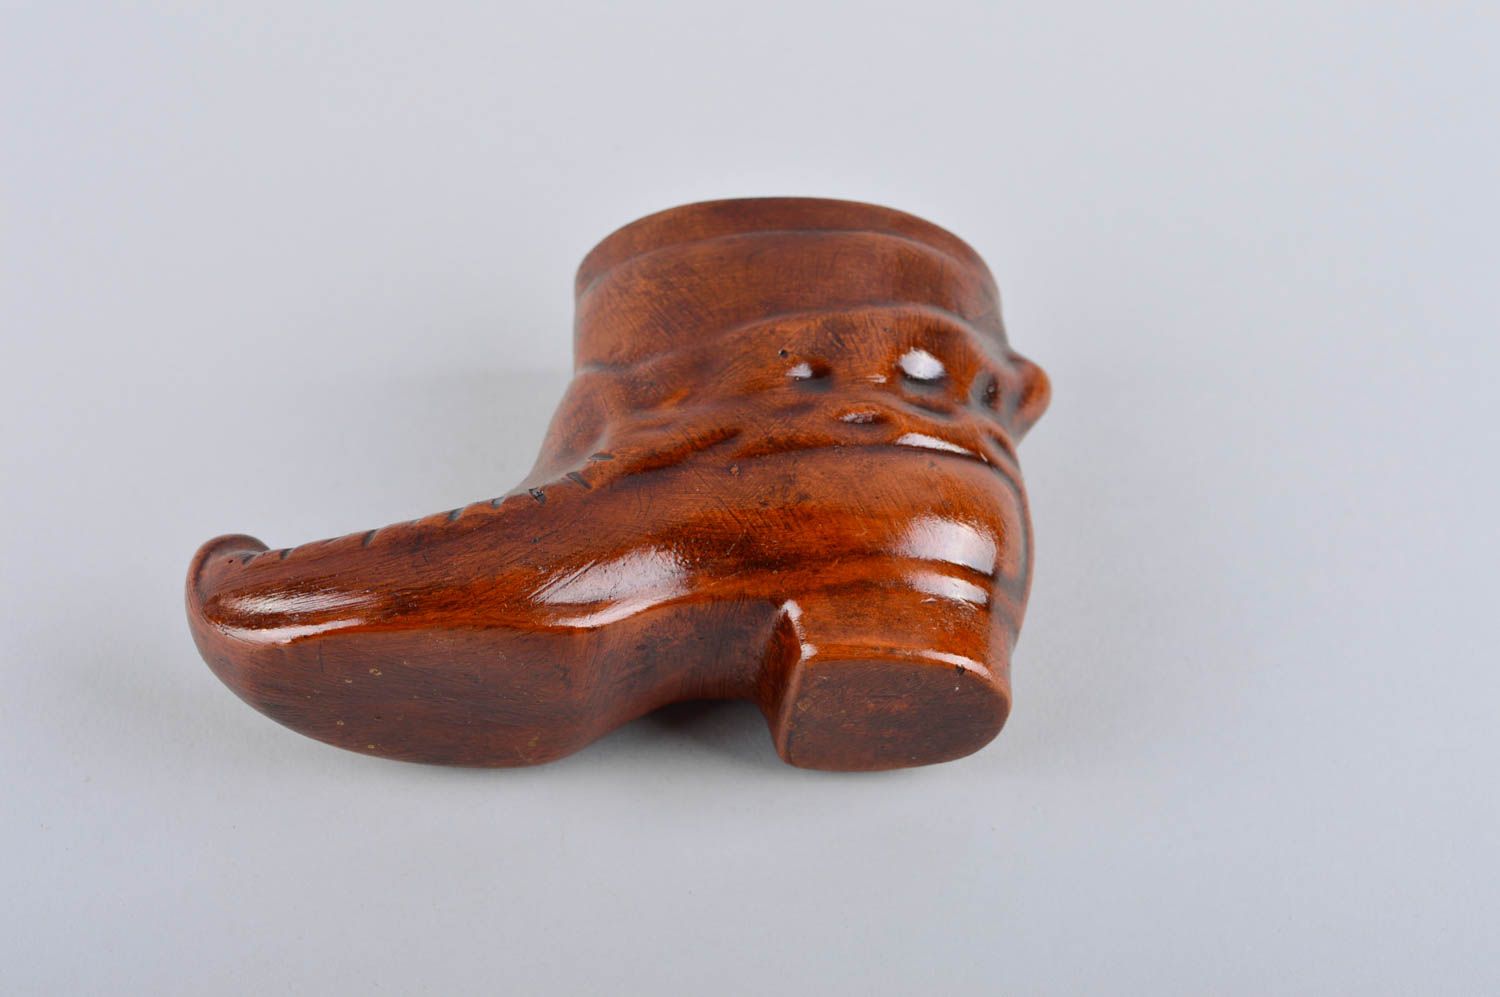 8 oz decorative boot shape ceramic brown vessel for home décor 0,5 lb photo 4